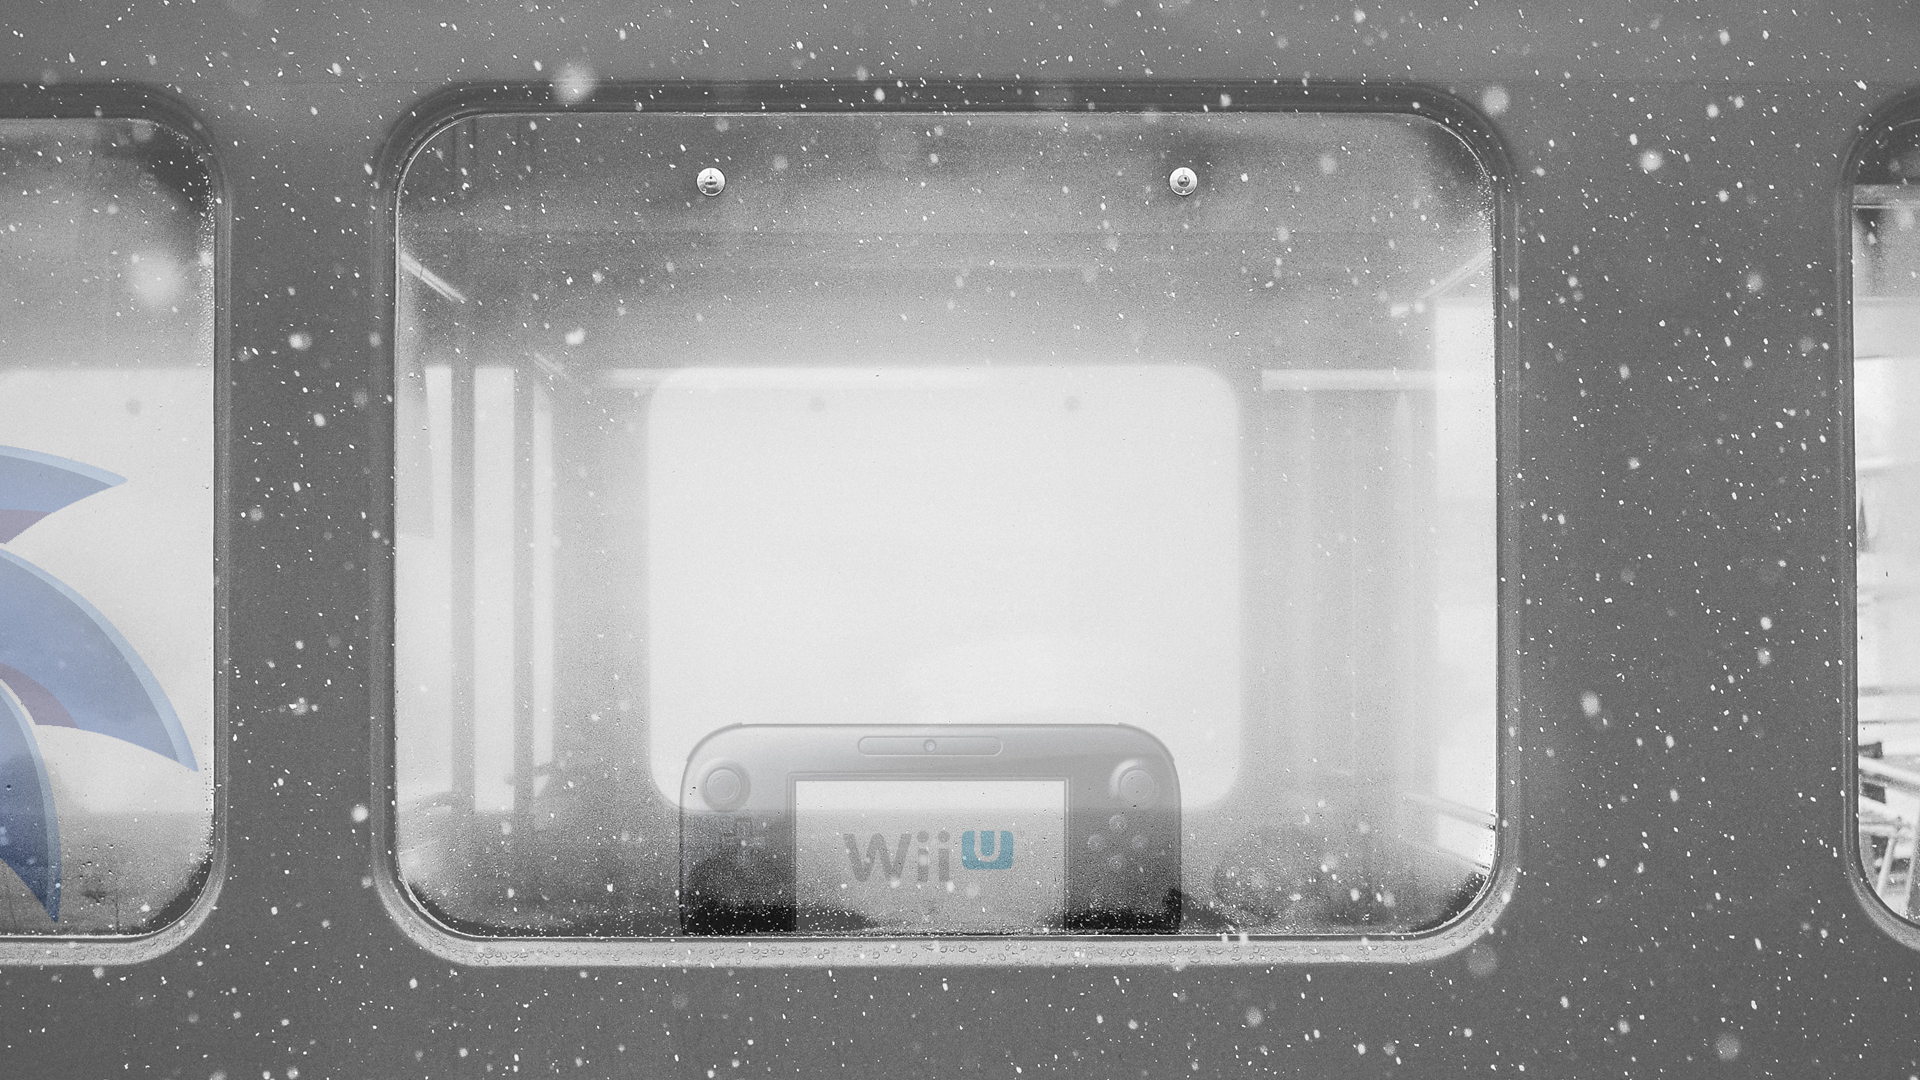 Sad Wii U